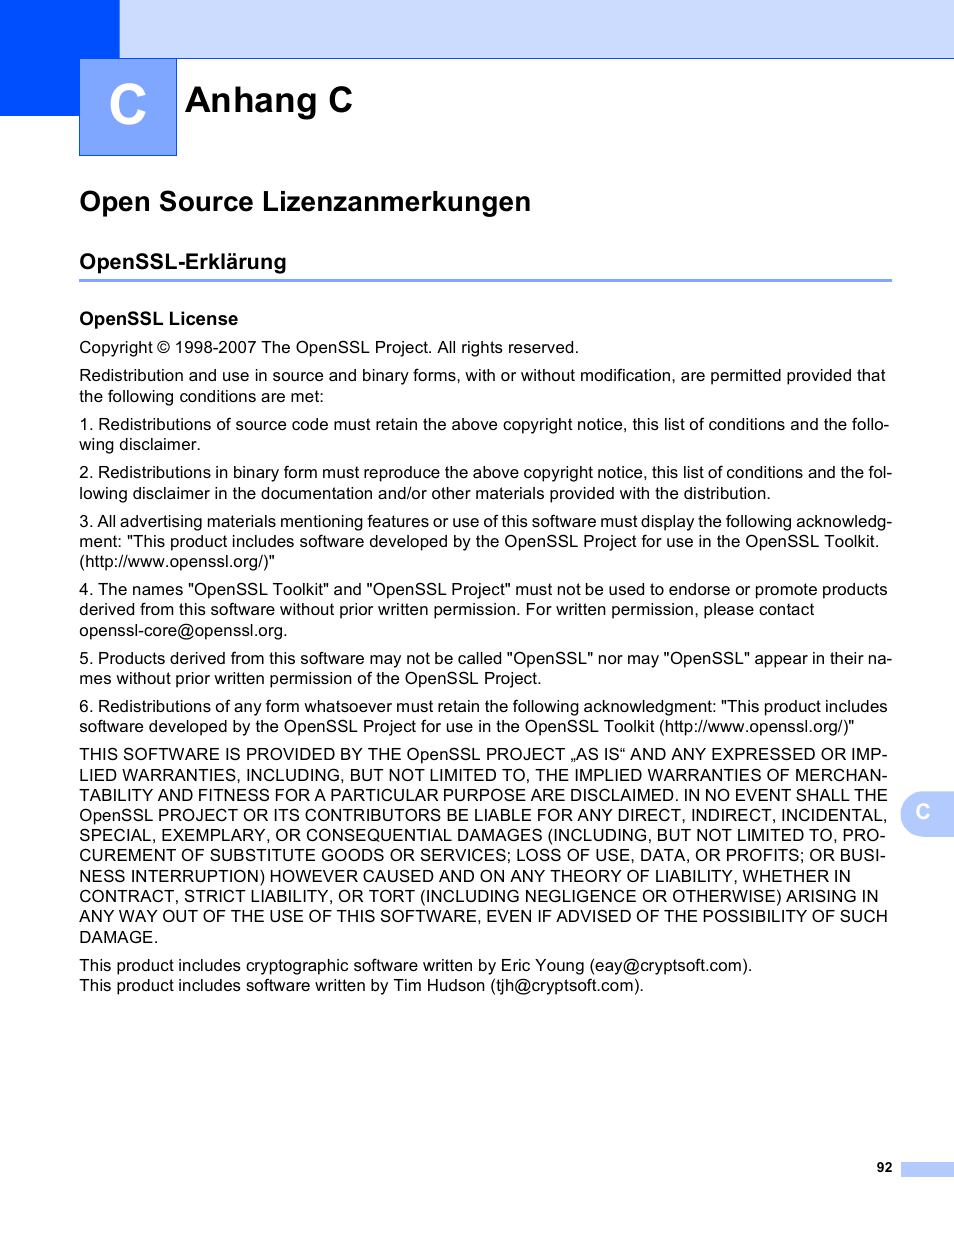 Anhang c, Open source lizenzanmerkungen, Openssl-erklärung | Openssl license | Brother DCP-9045CDN Benutzerhandbuch | Seite 100 / 103